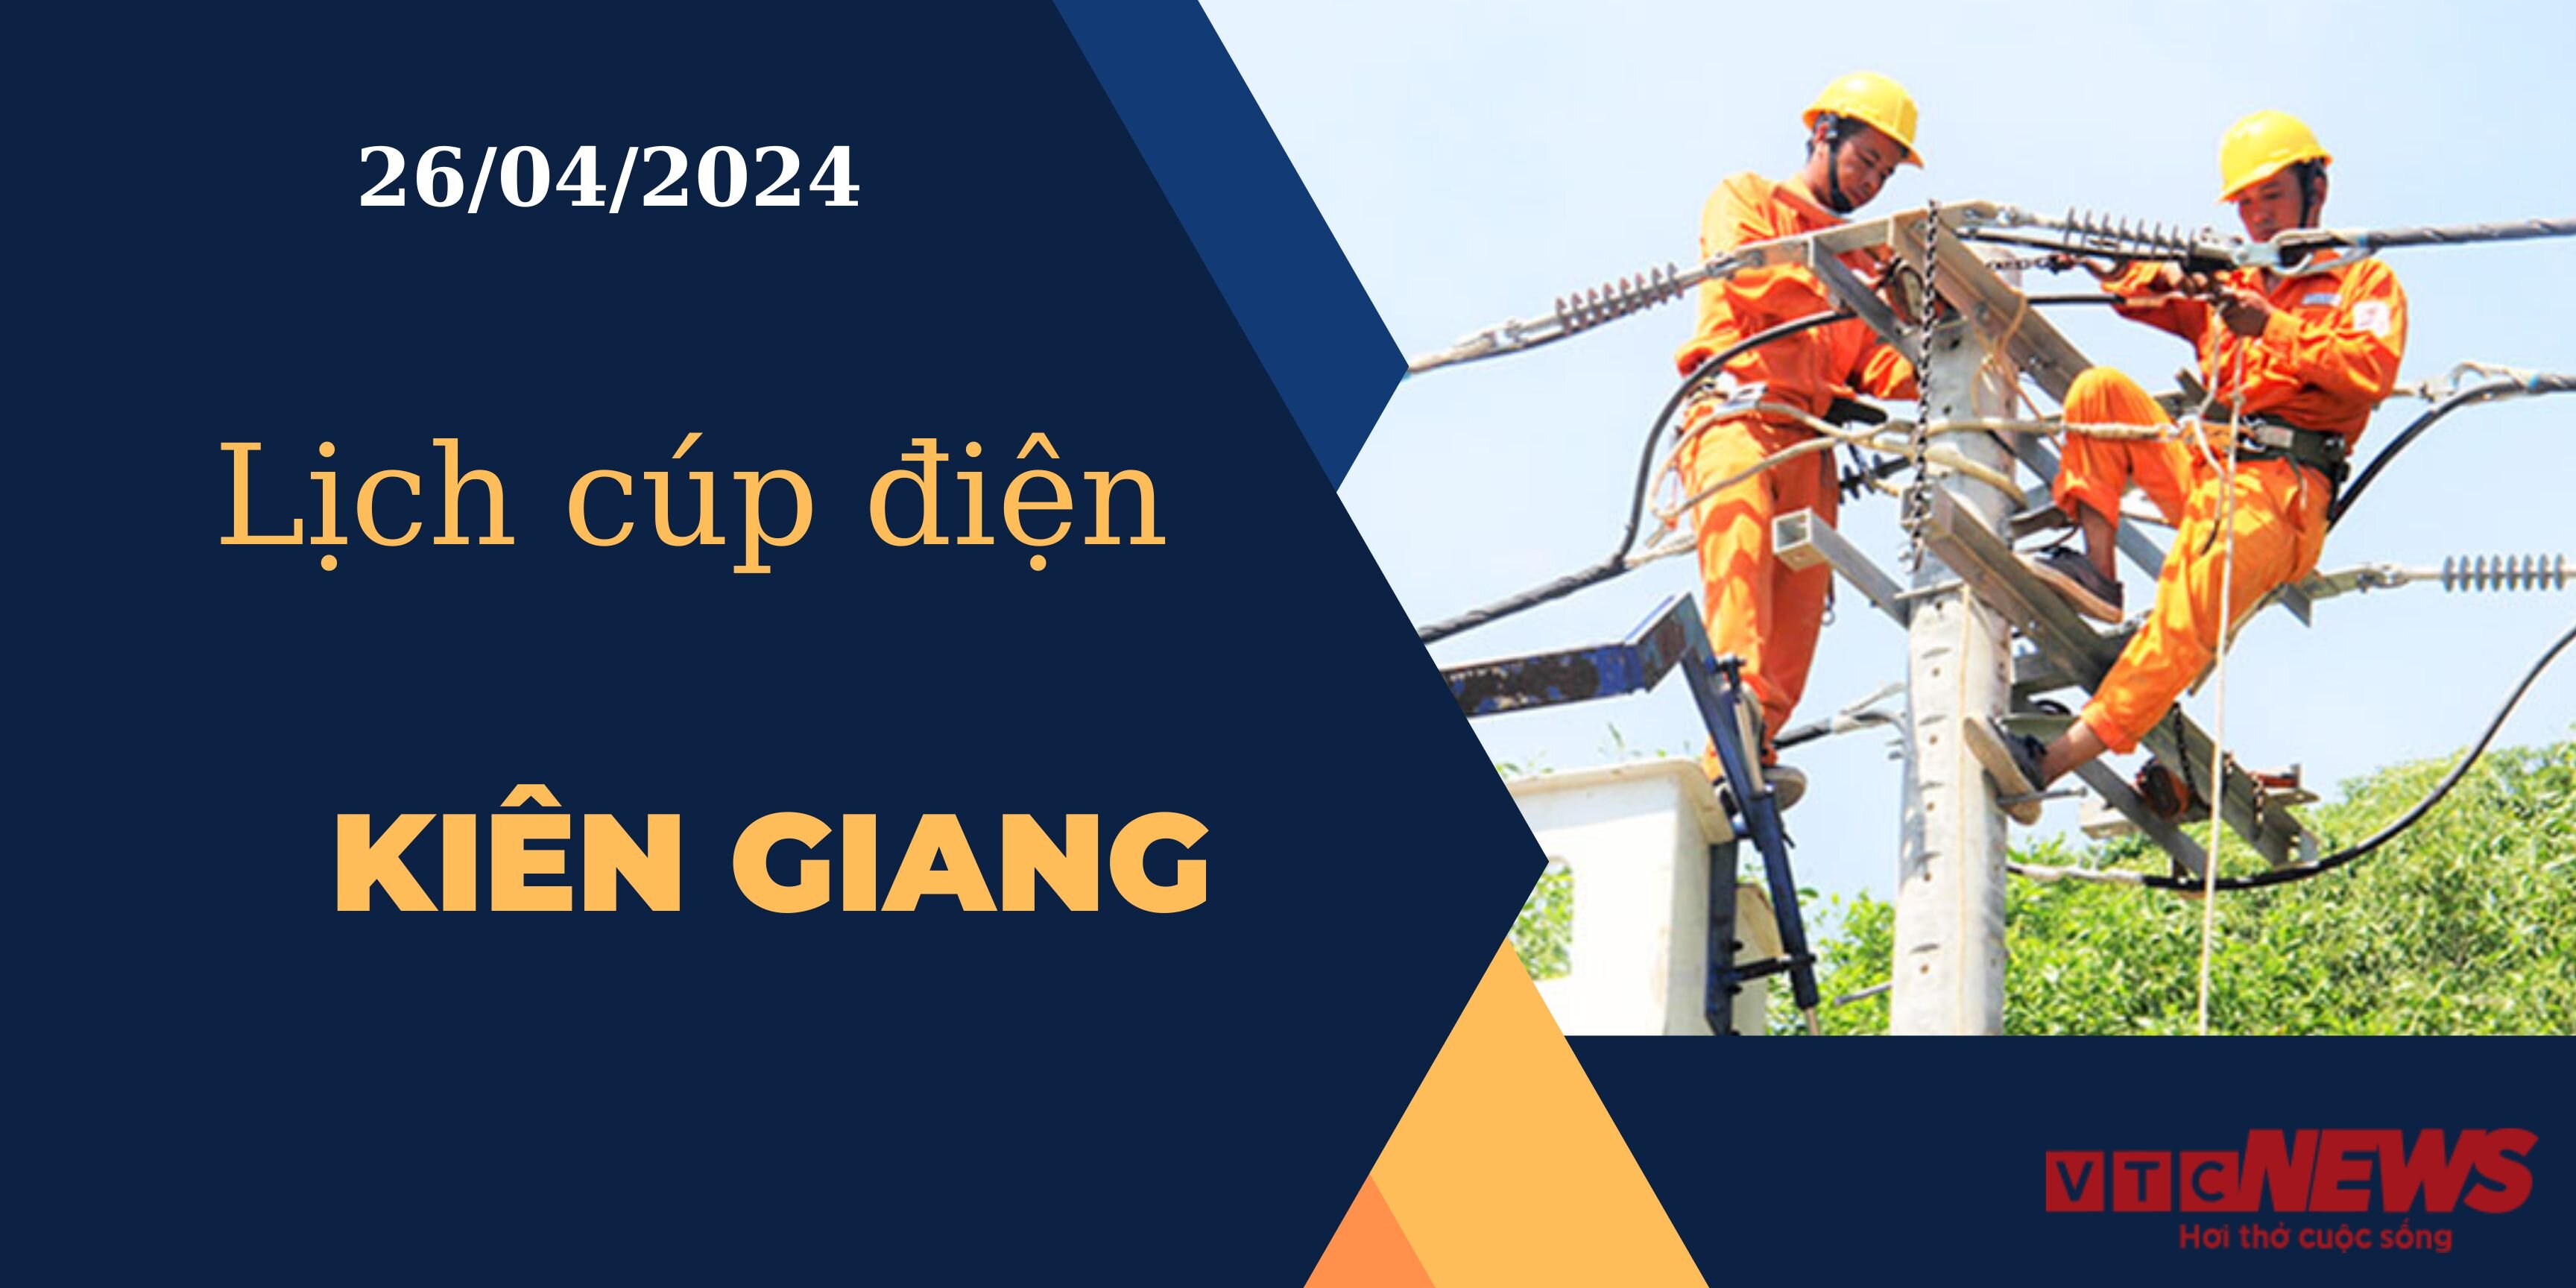 Lịch cúp điện hôm nay ngày 26/04/2024 tại Kiên Giang